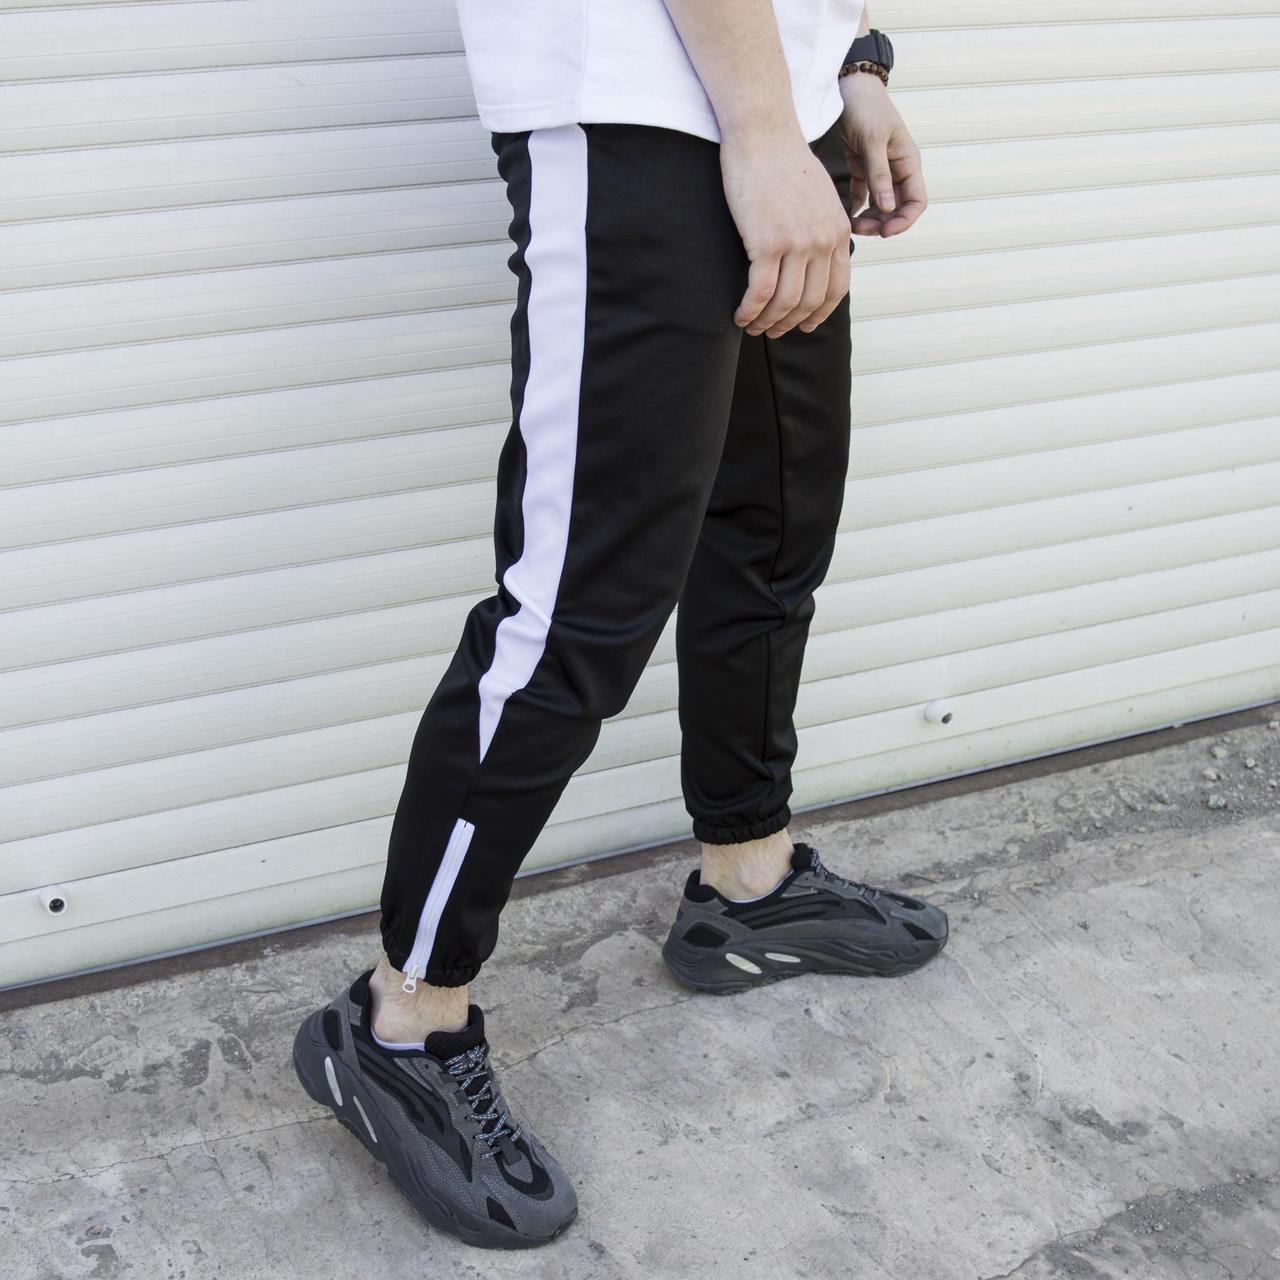 Спортивные штаны черные с белым лампасом мужские модель Rocky - Фото 3